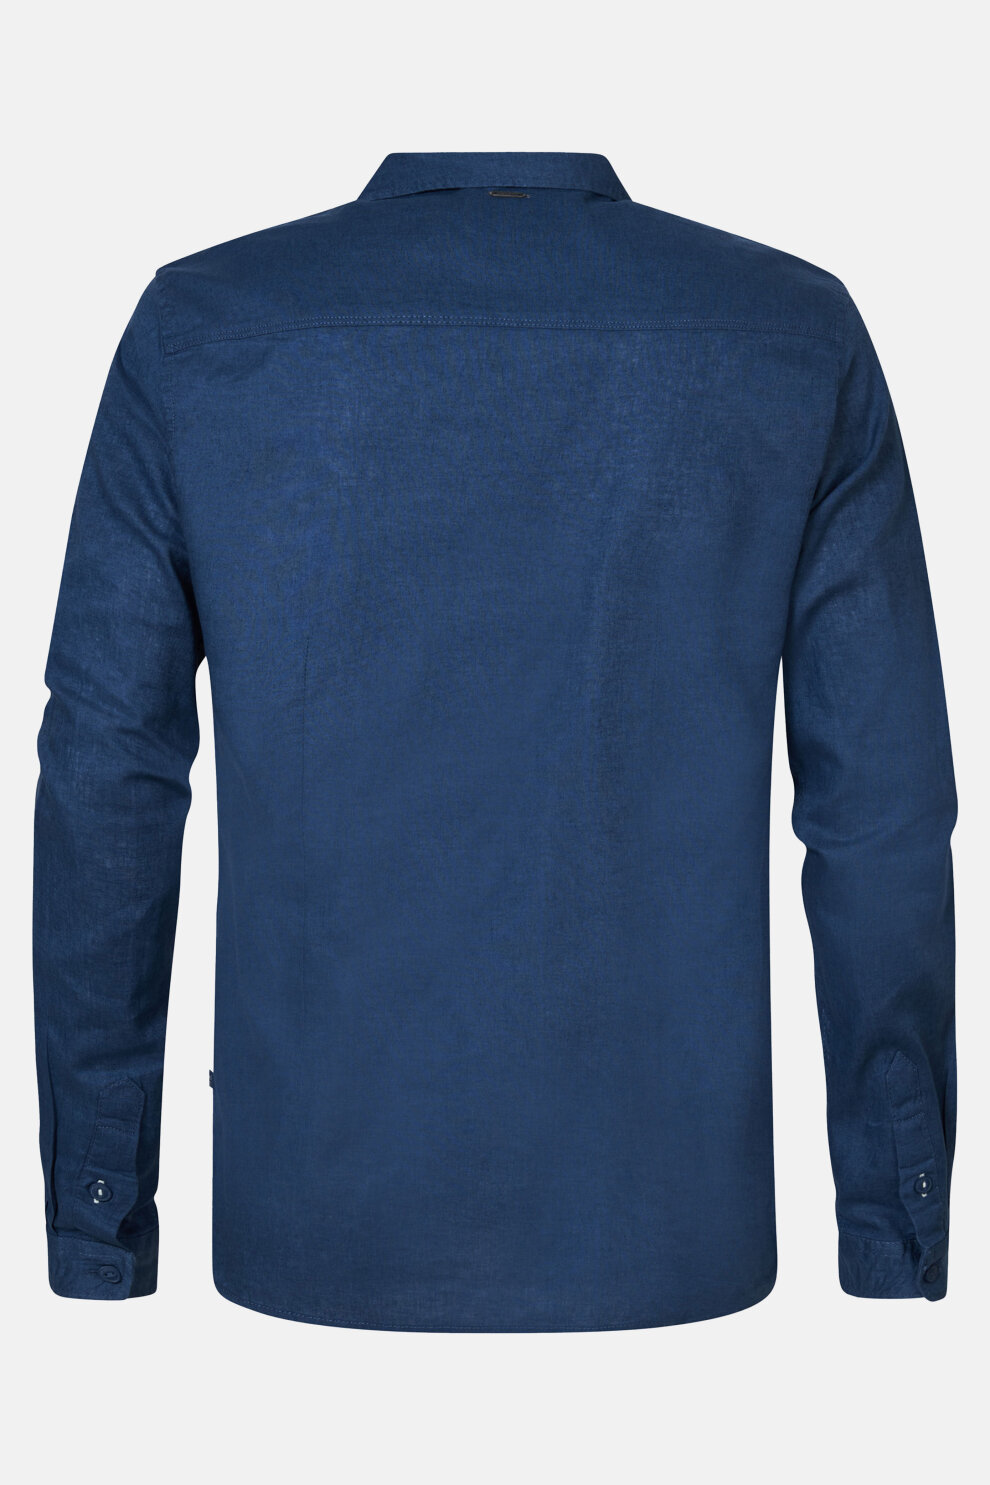 MUŠKARCI - Košulje - Petrol košulja - Dugi rukavi - Plava